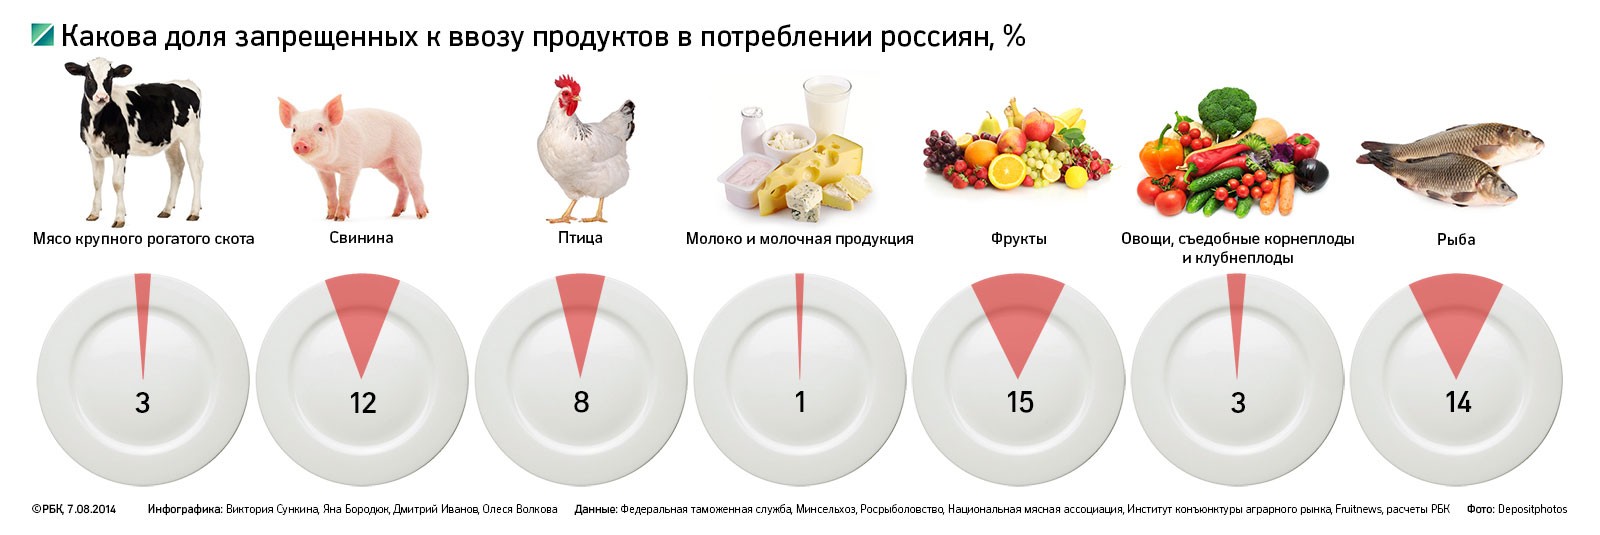 В 2013 году Россия купила «запрещенной» продукции на $8,4 млрд